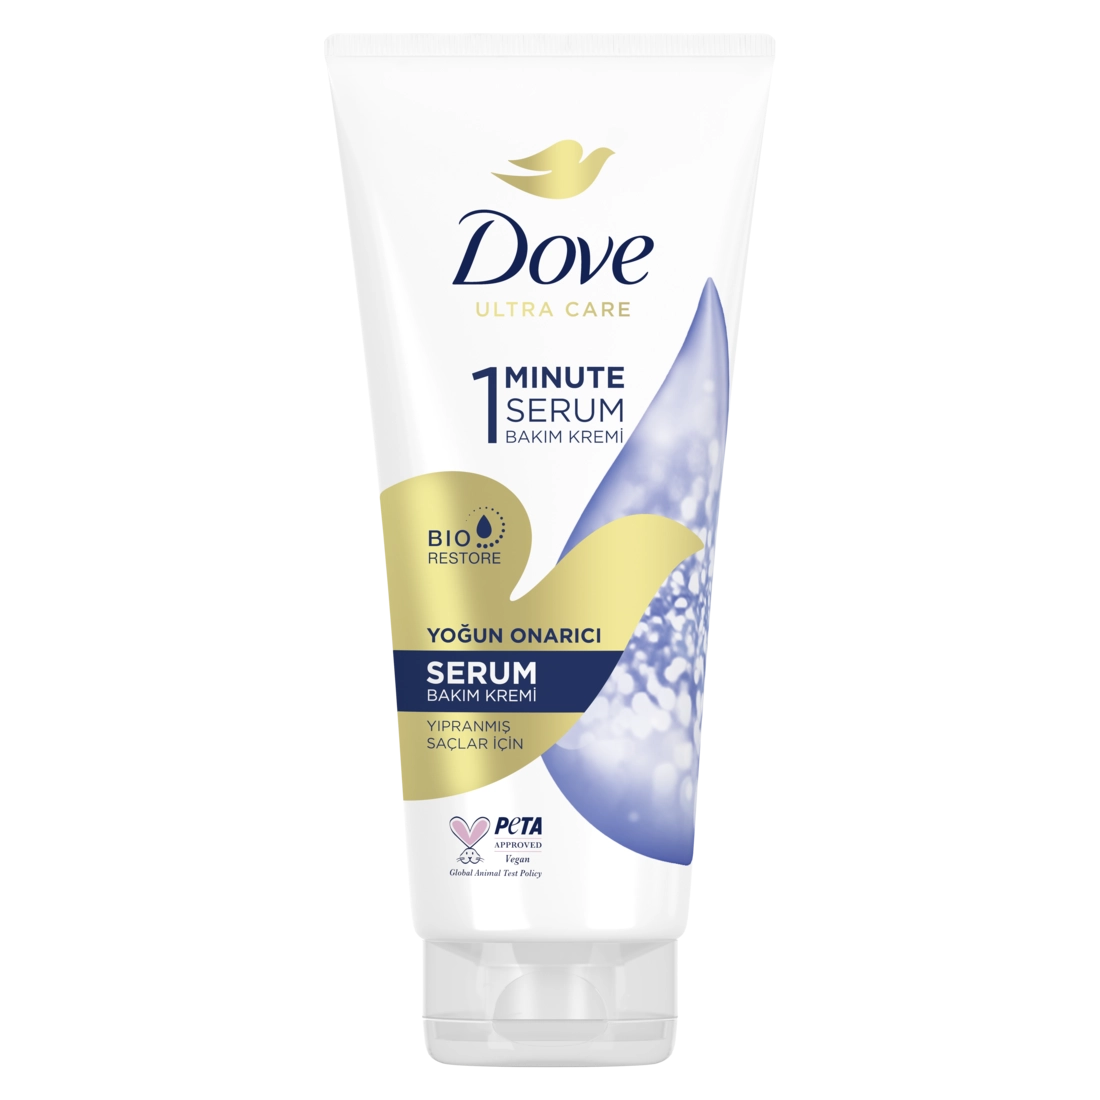 Dove 1 Dakika Yoğun Onarıcı Serum Bakım Kremi - Saç Bakım Güzellik